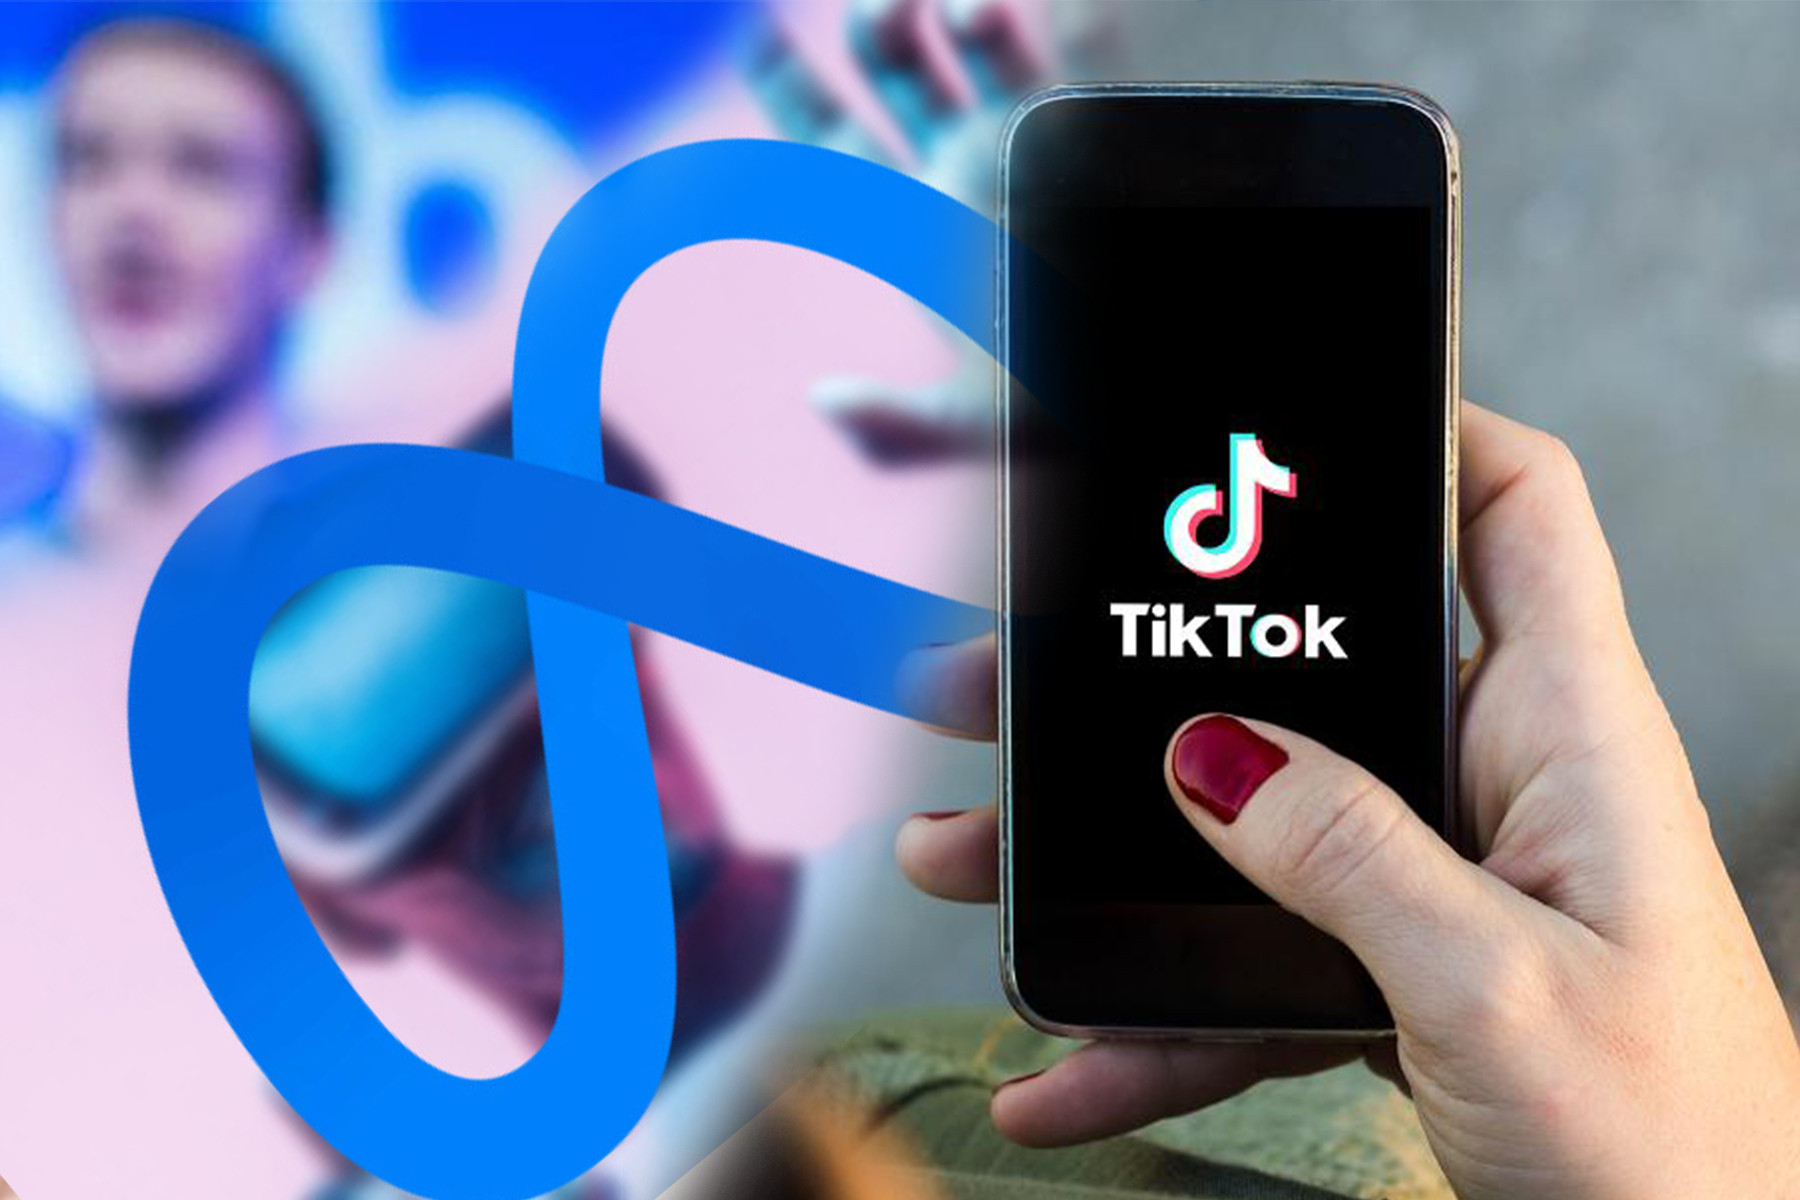 TikTok bị cấm hoàn toàn tại Montana, Facebook đối mặt án phạt kỷ lục